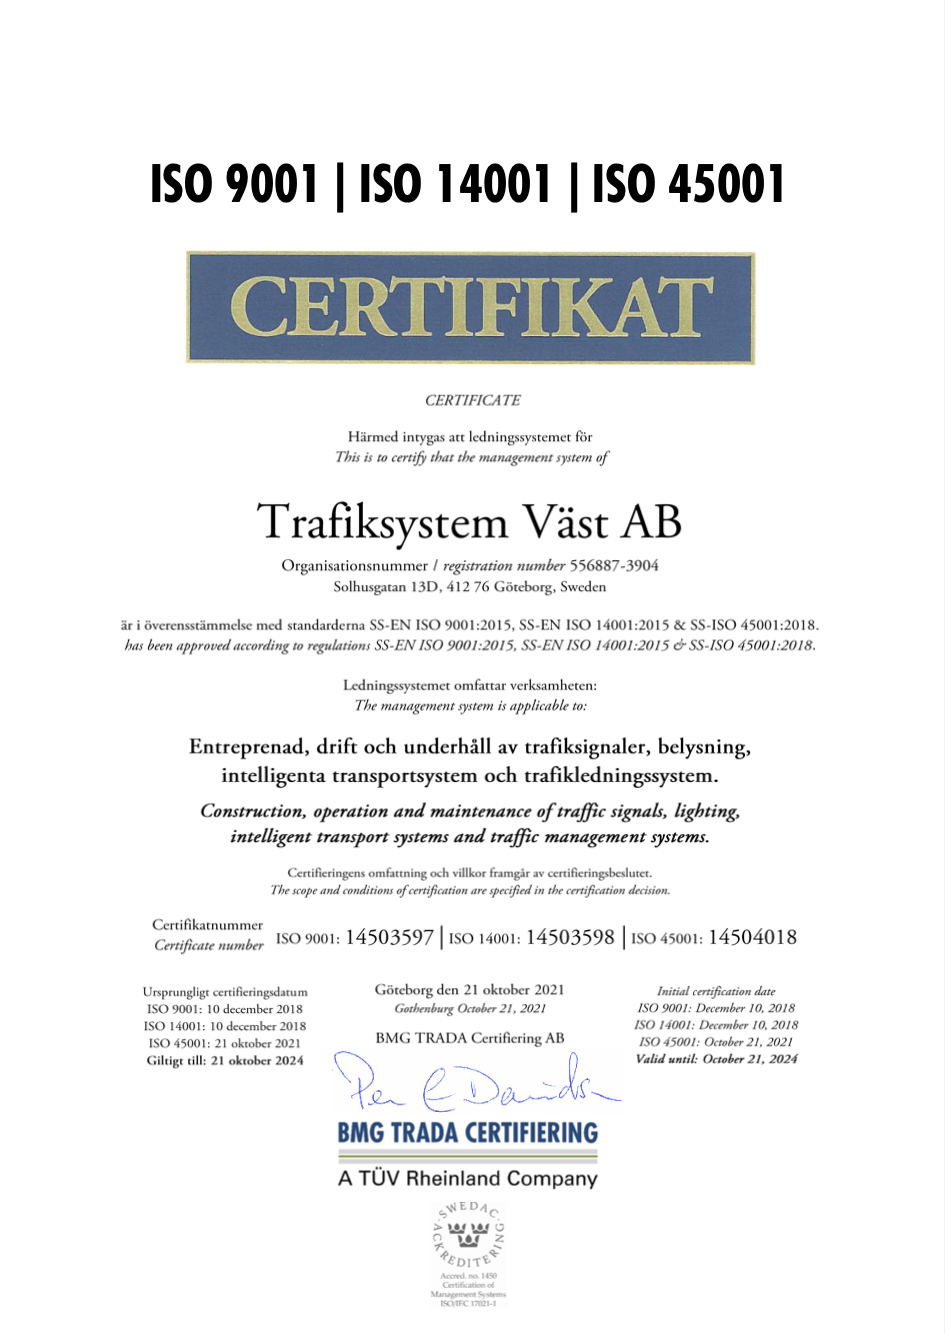 Trafiksystem Väst AB Certifikat ISO 9001, 14001 & 45001_2021